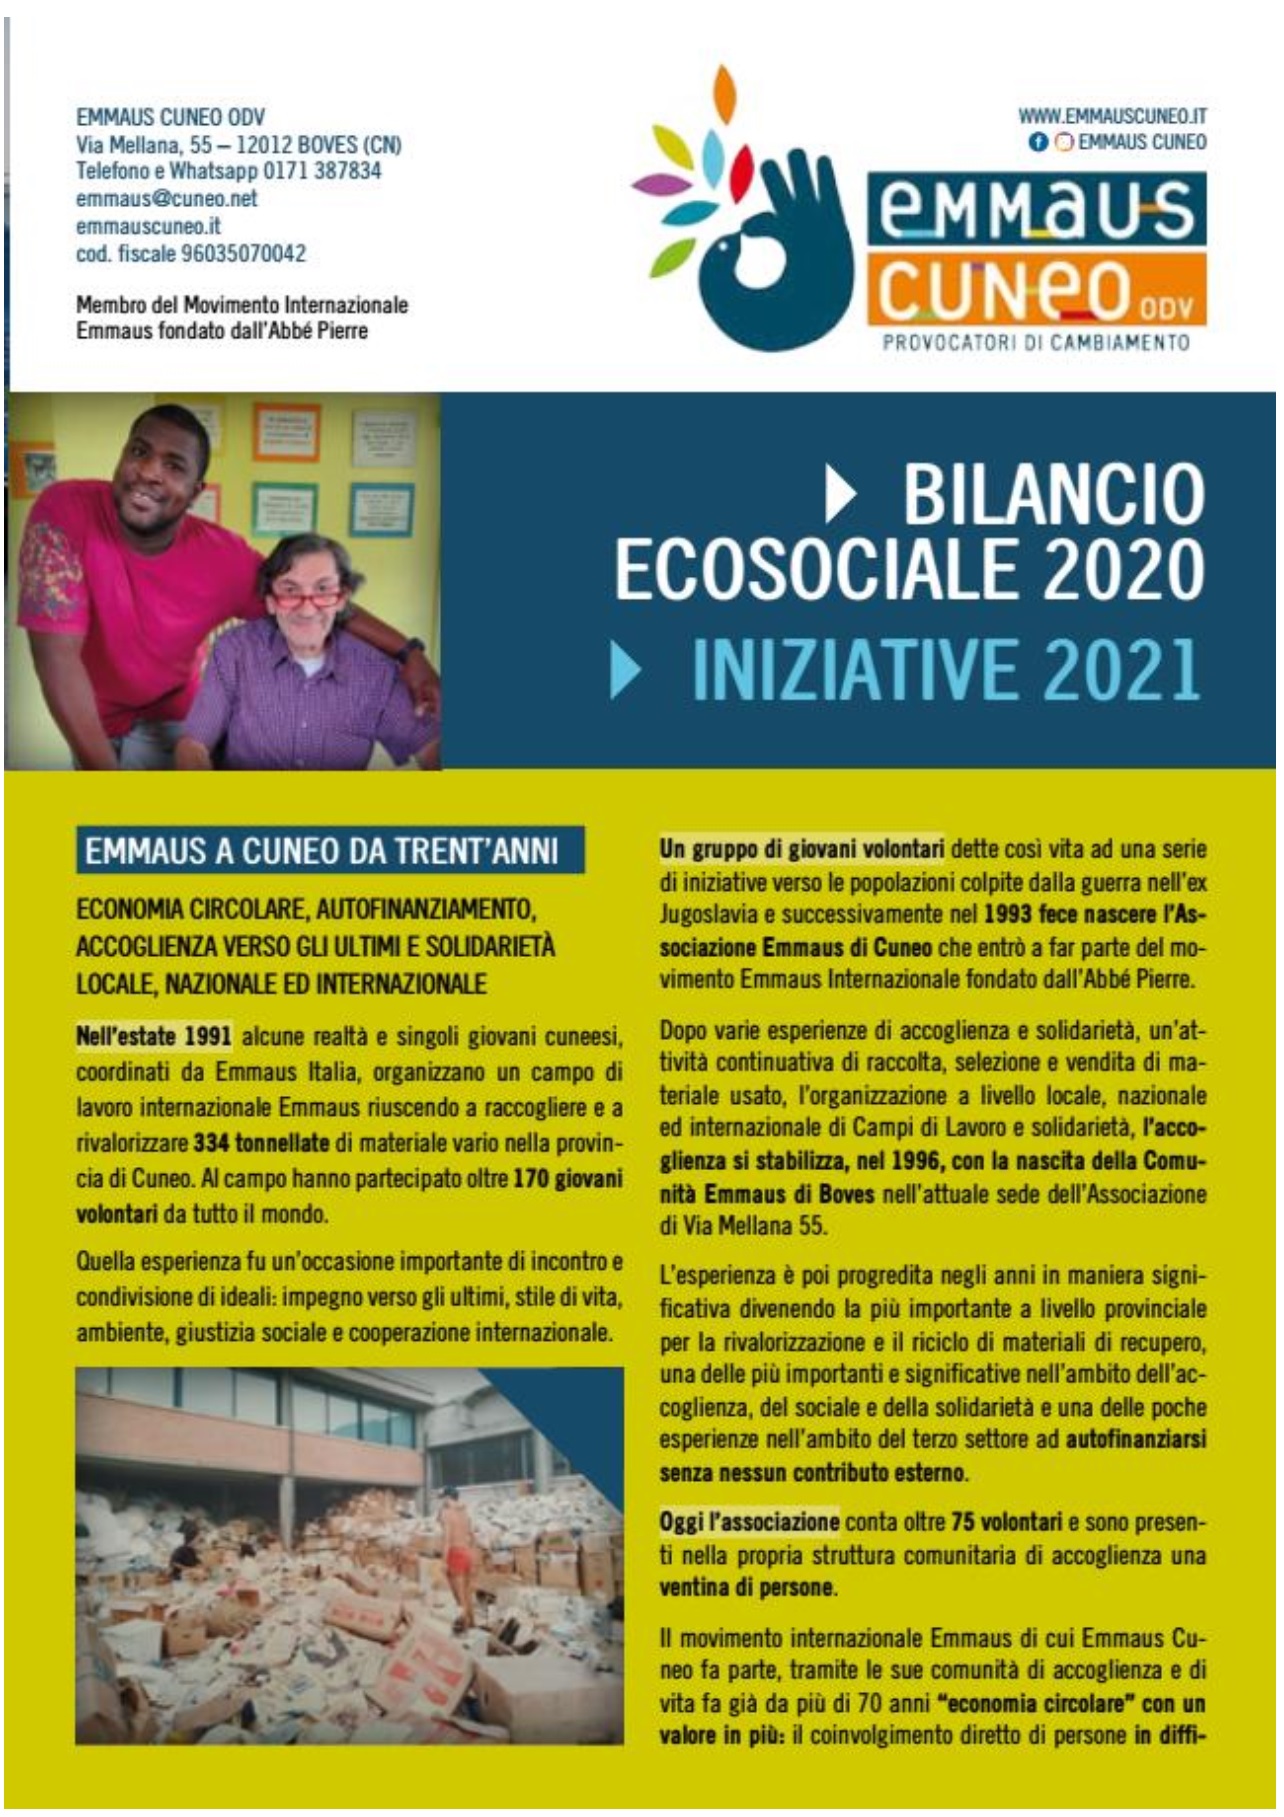 bilancio ecosociale 2020-1